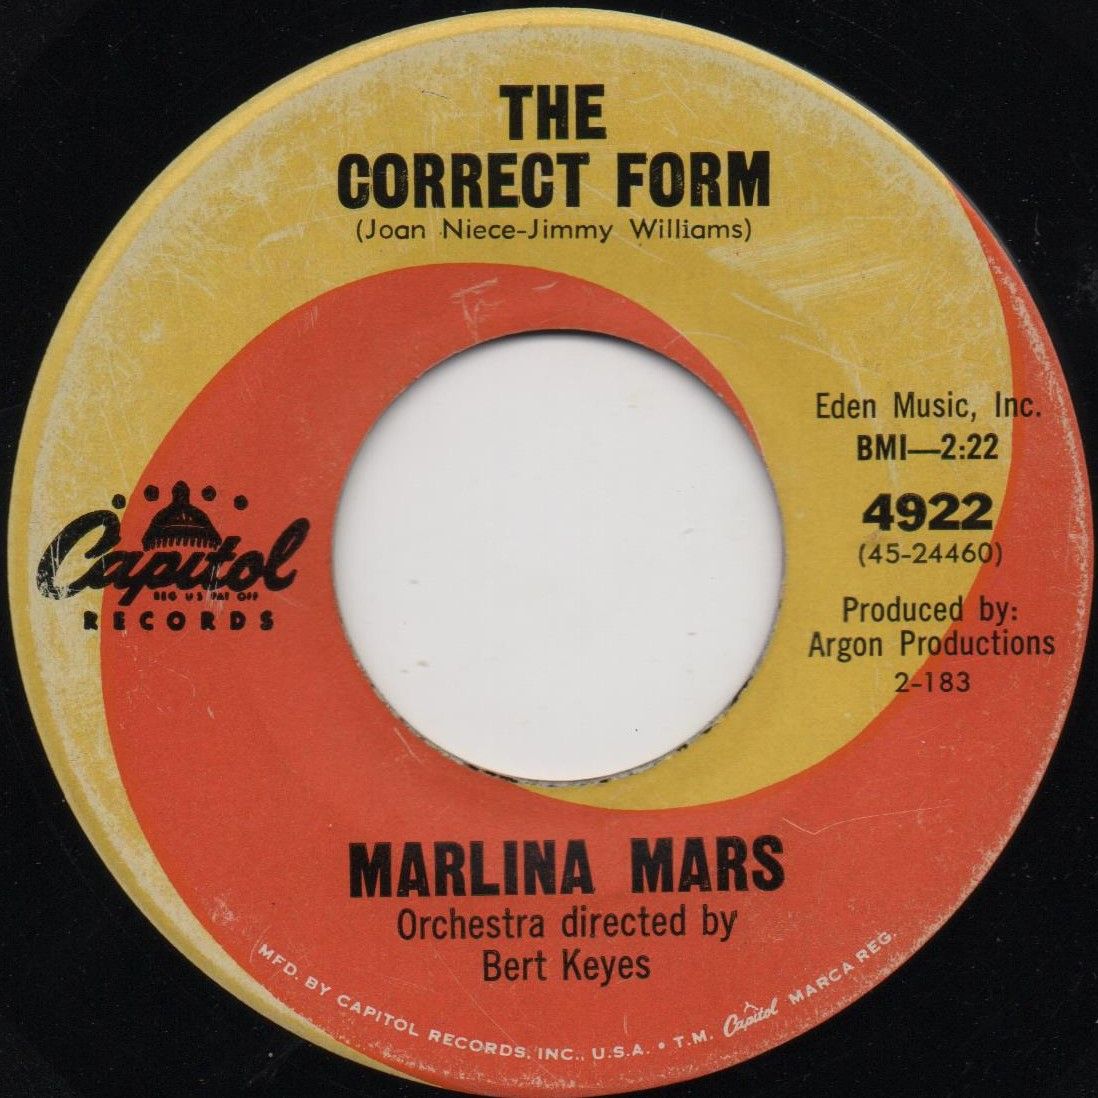 MARLINA MARS - THE CORRECT FORM